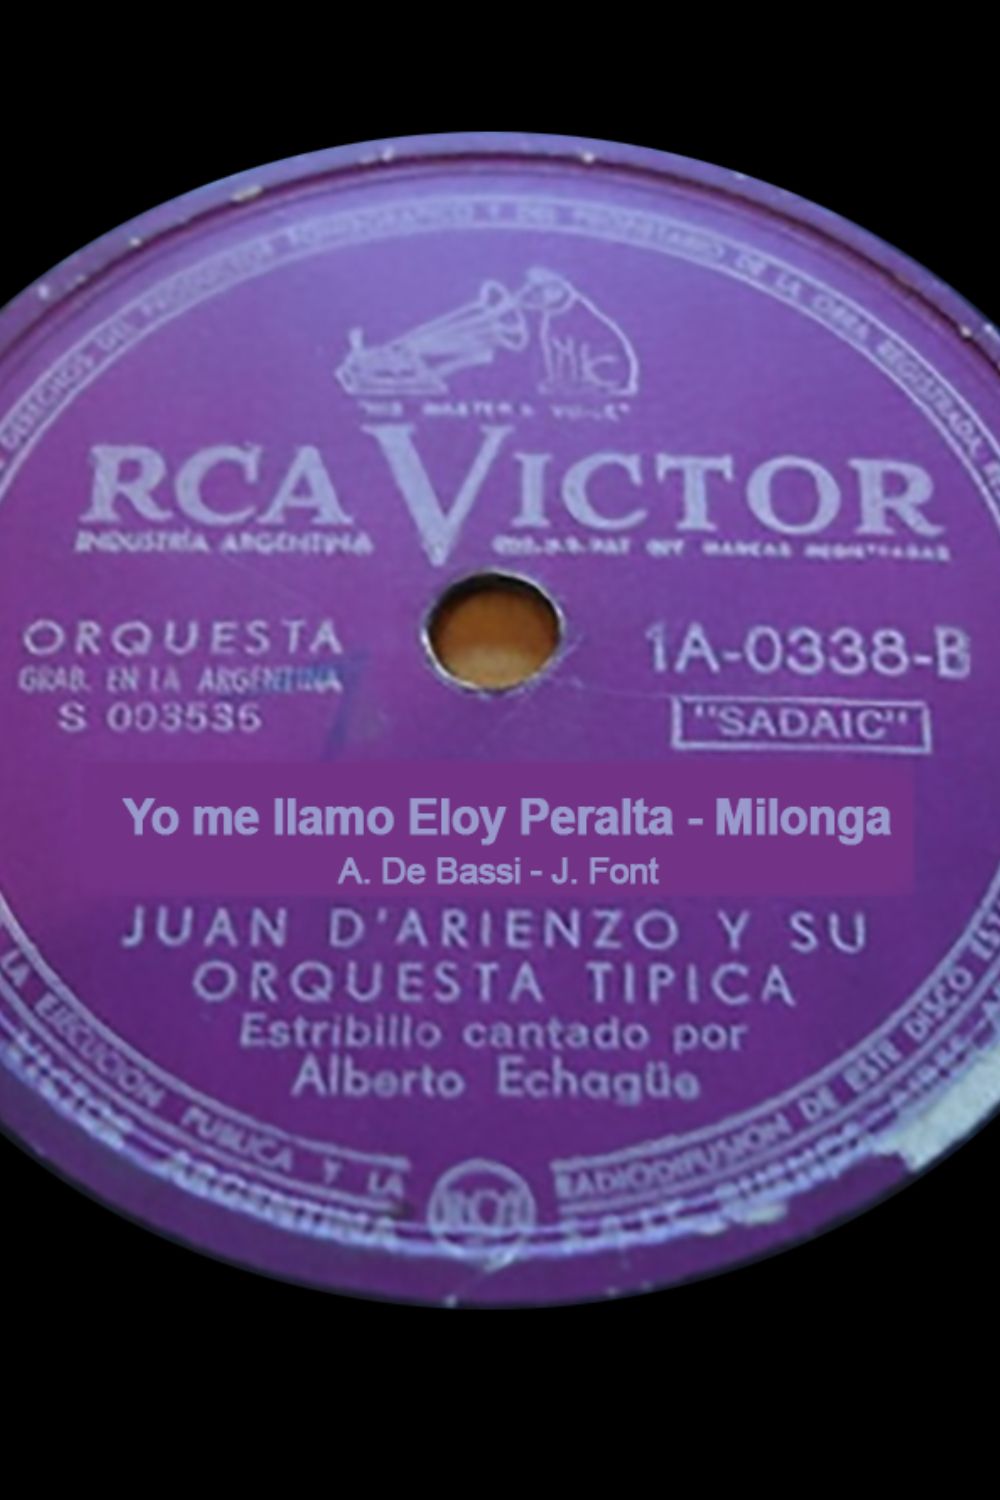 "Yo me llamo Eloy Peralta", disco vinilo de la milonga.